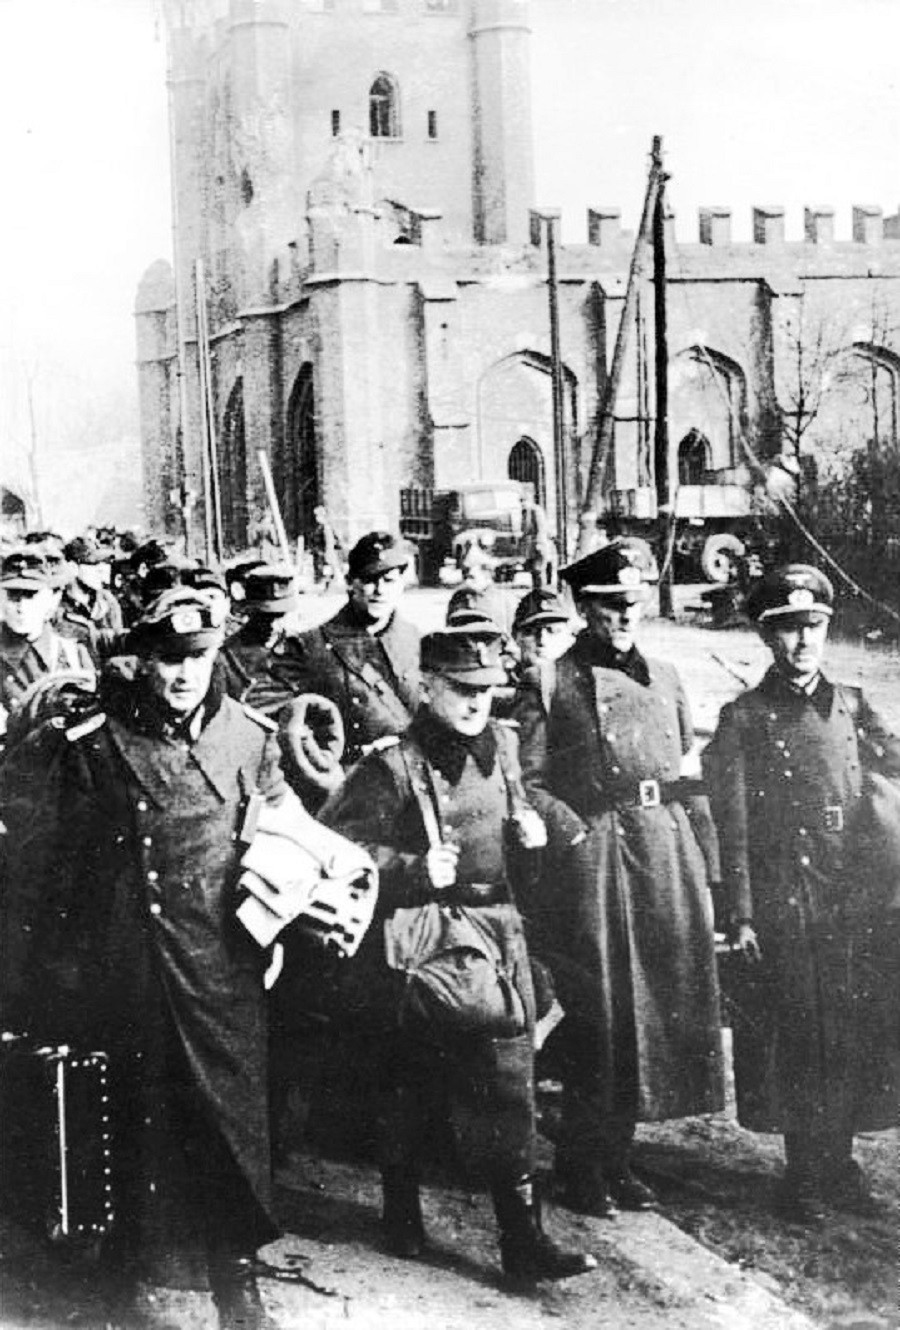 Predaja njemačkih vojnika

